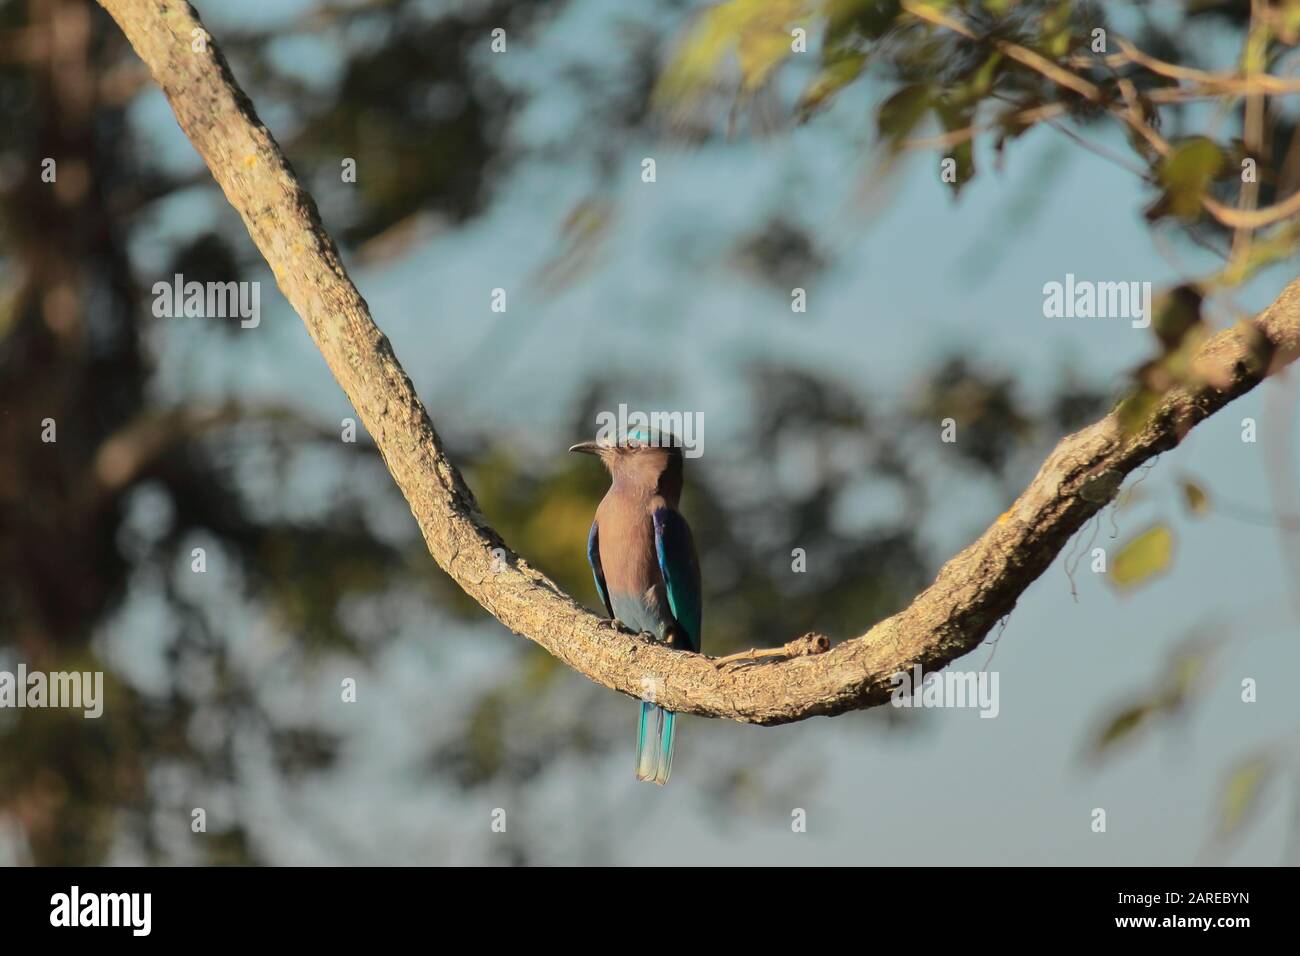 une rouette indienne femelle (coracias benghalensis) est assise sur une branche du parc national de kaziranga, assam en inde Banque D'Images